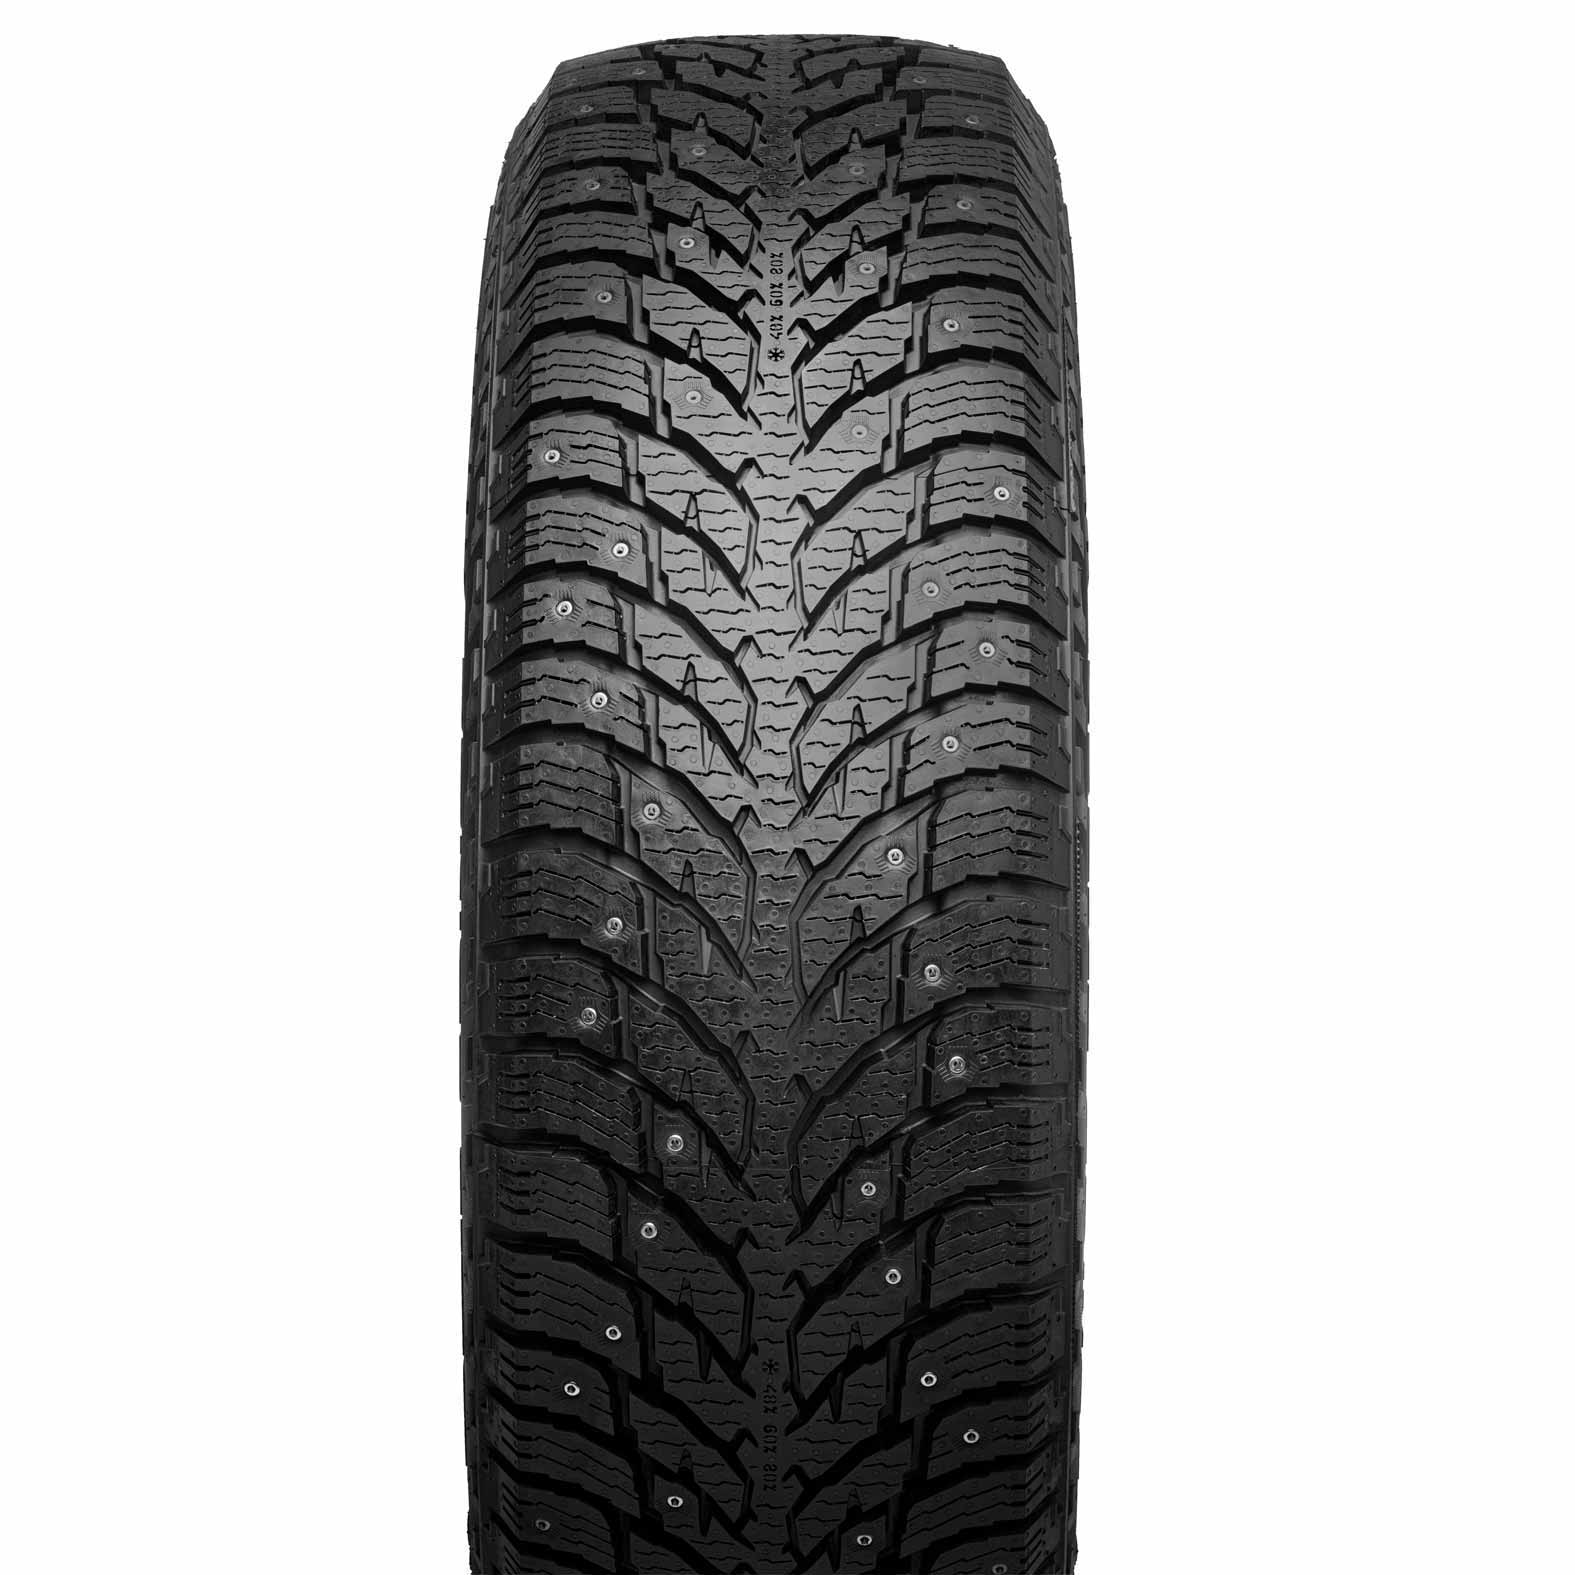 nokian-hakkapeliitta-lt3-studded-tires-for-winter-kal-tire